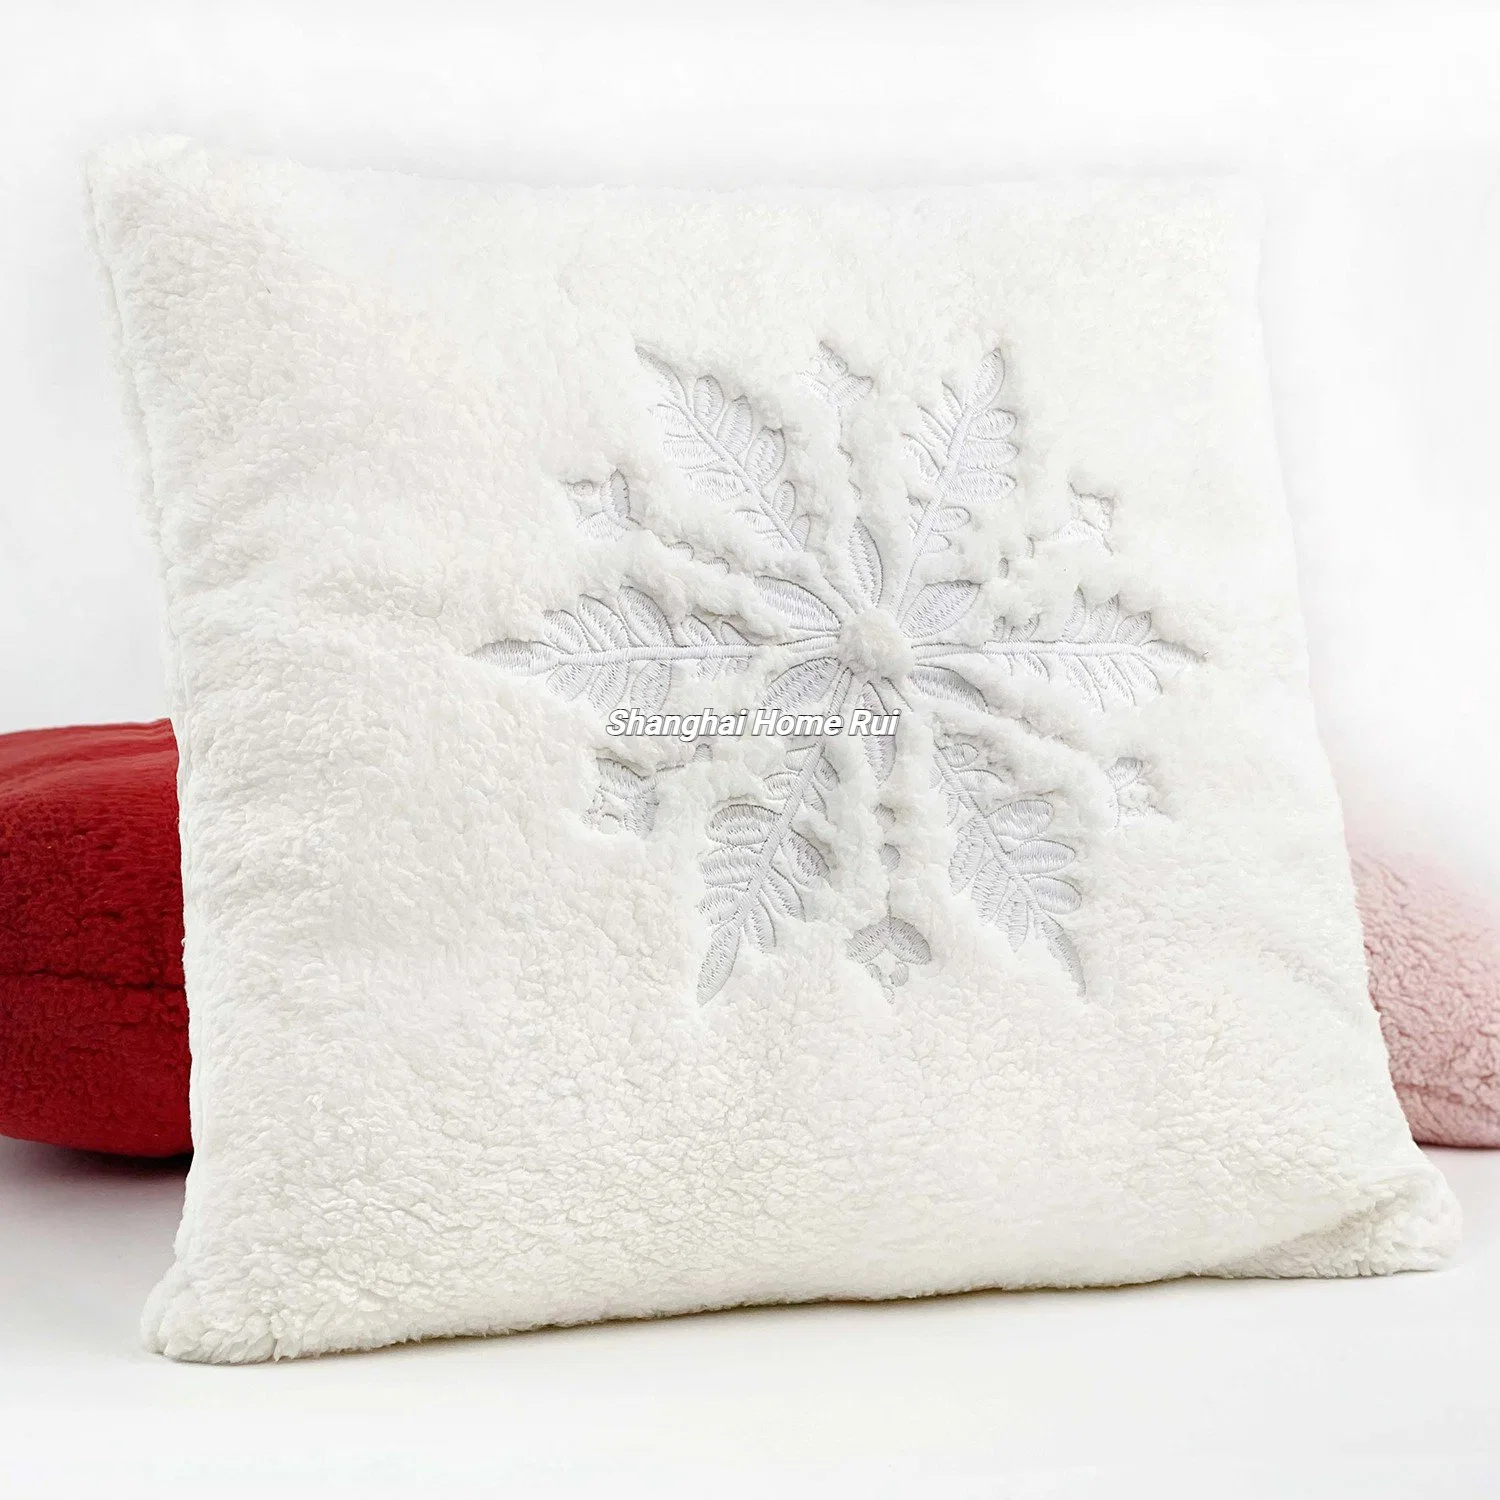 Hogar Living Room Deco tela Navidad Blanco bordado de nieve Flake Funda de almohada funda acolchada de felpa acolchada